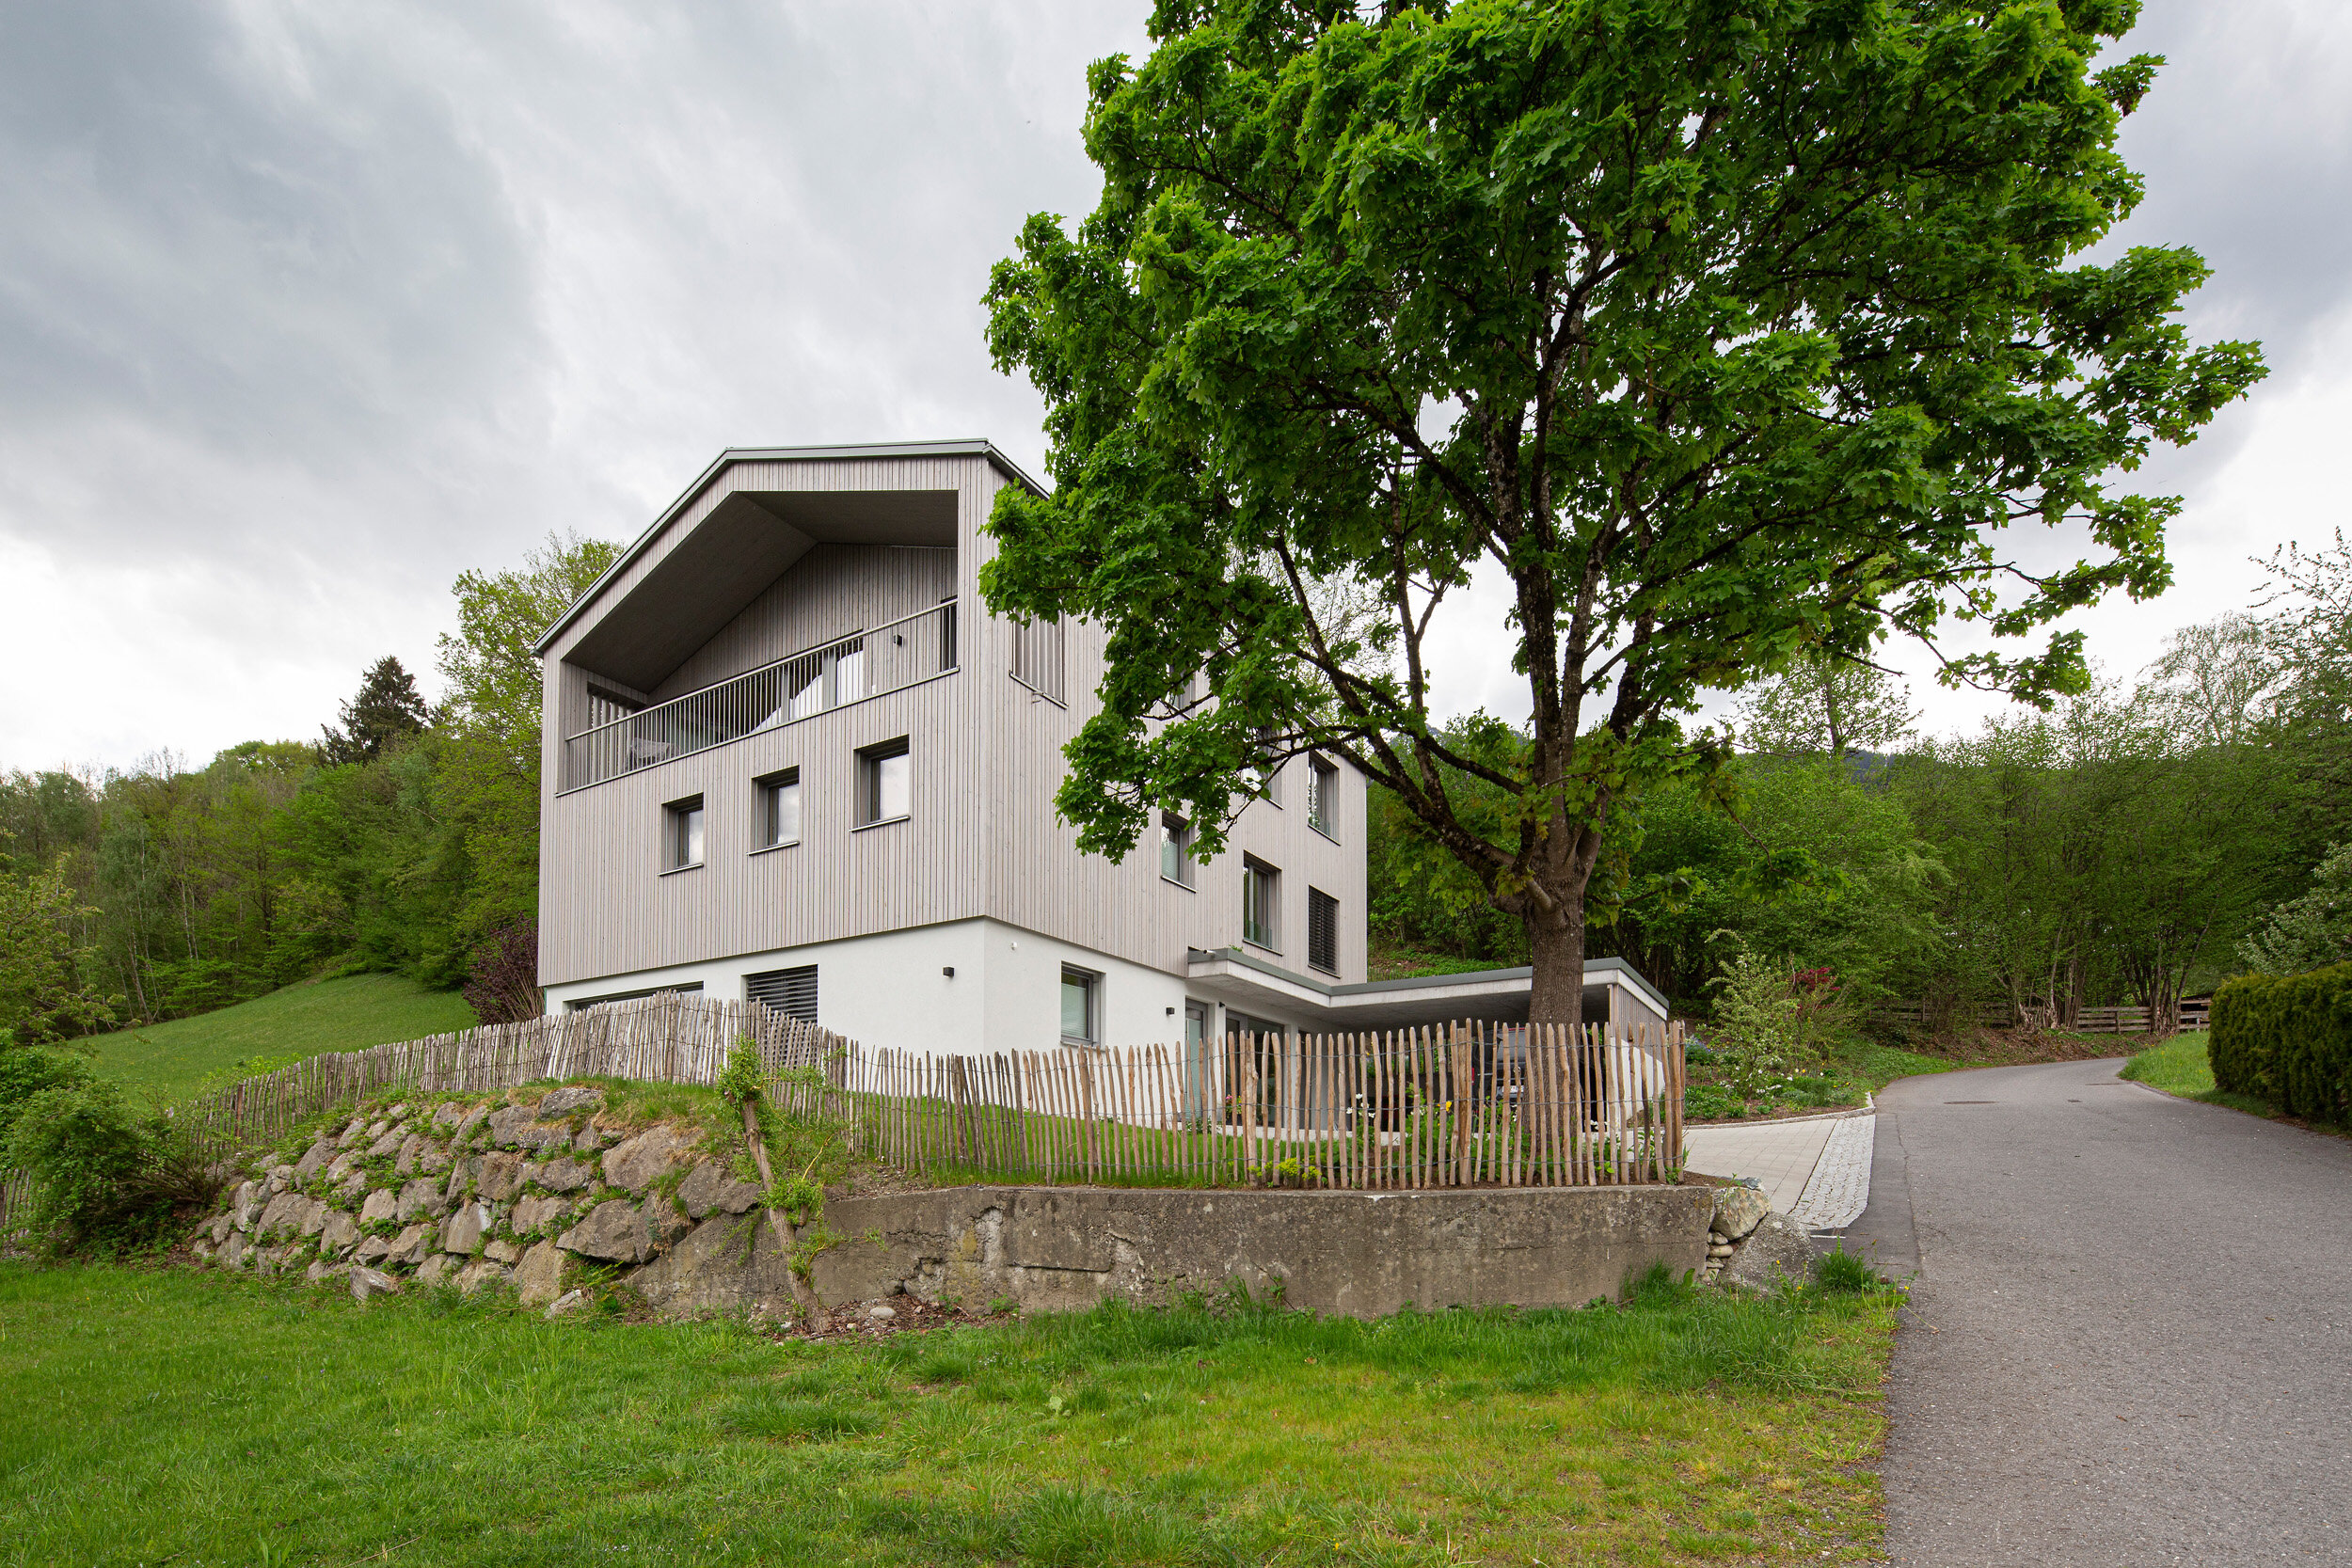 Zweifamilienhaus am Hang, Fotos Petra Rainer